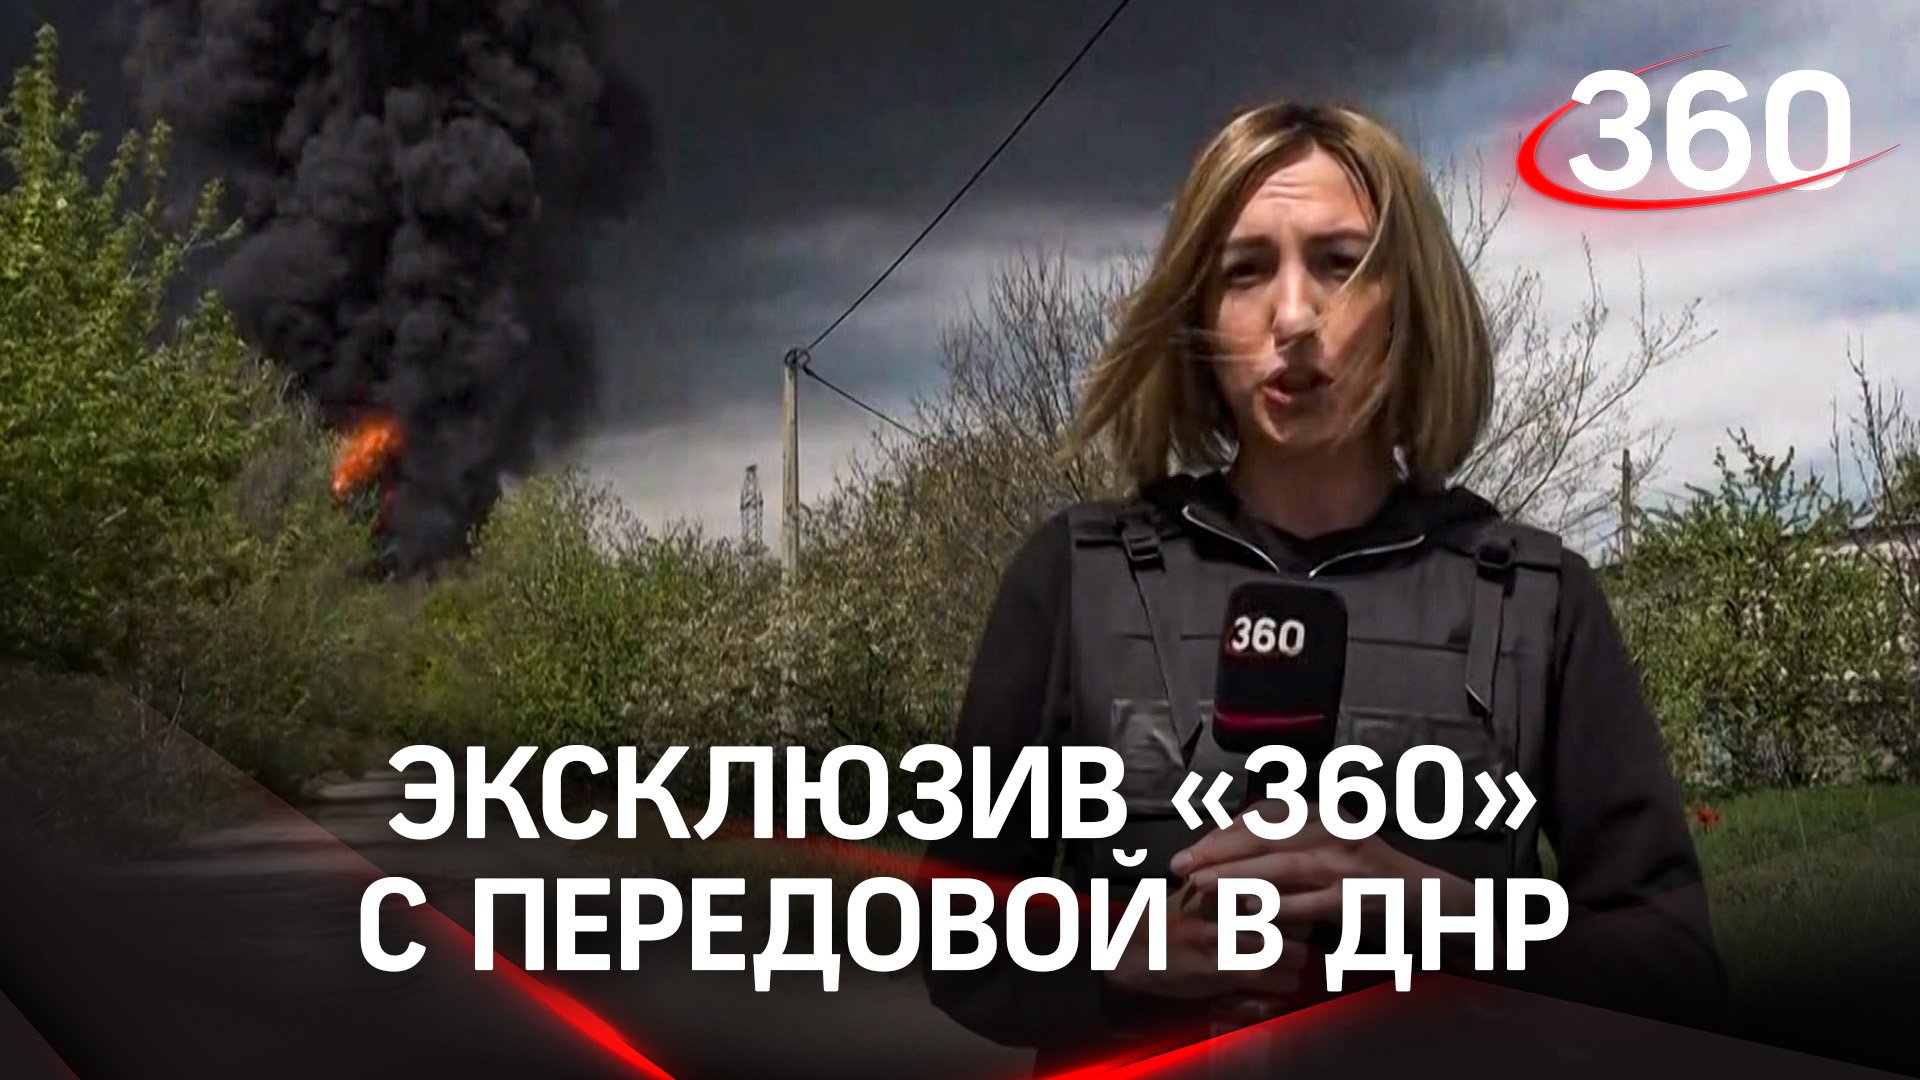 Эксклюзив "360" с передовой в ДНР: "Проснулись от мощных взрывов"